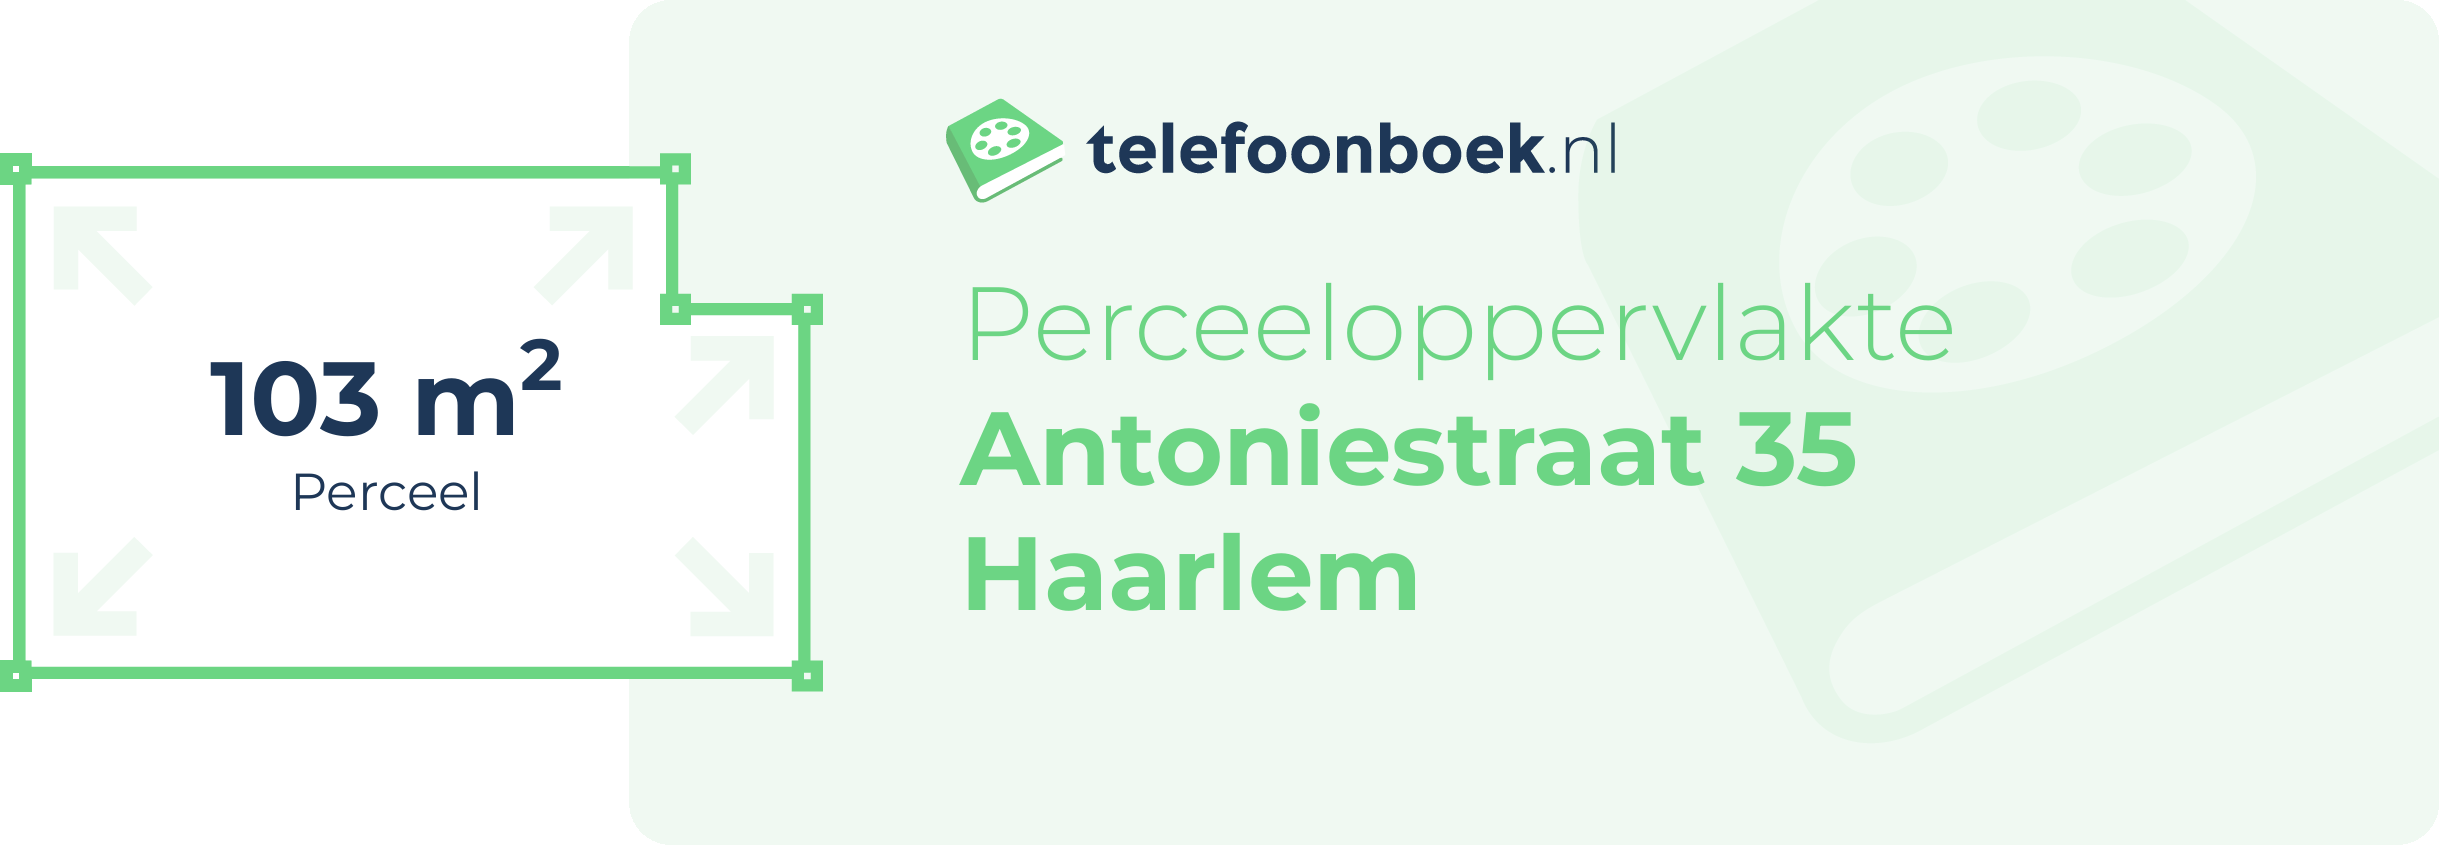 Perceeloppervlakte Antoniestraat 35 Haarlem